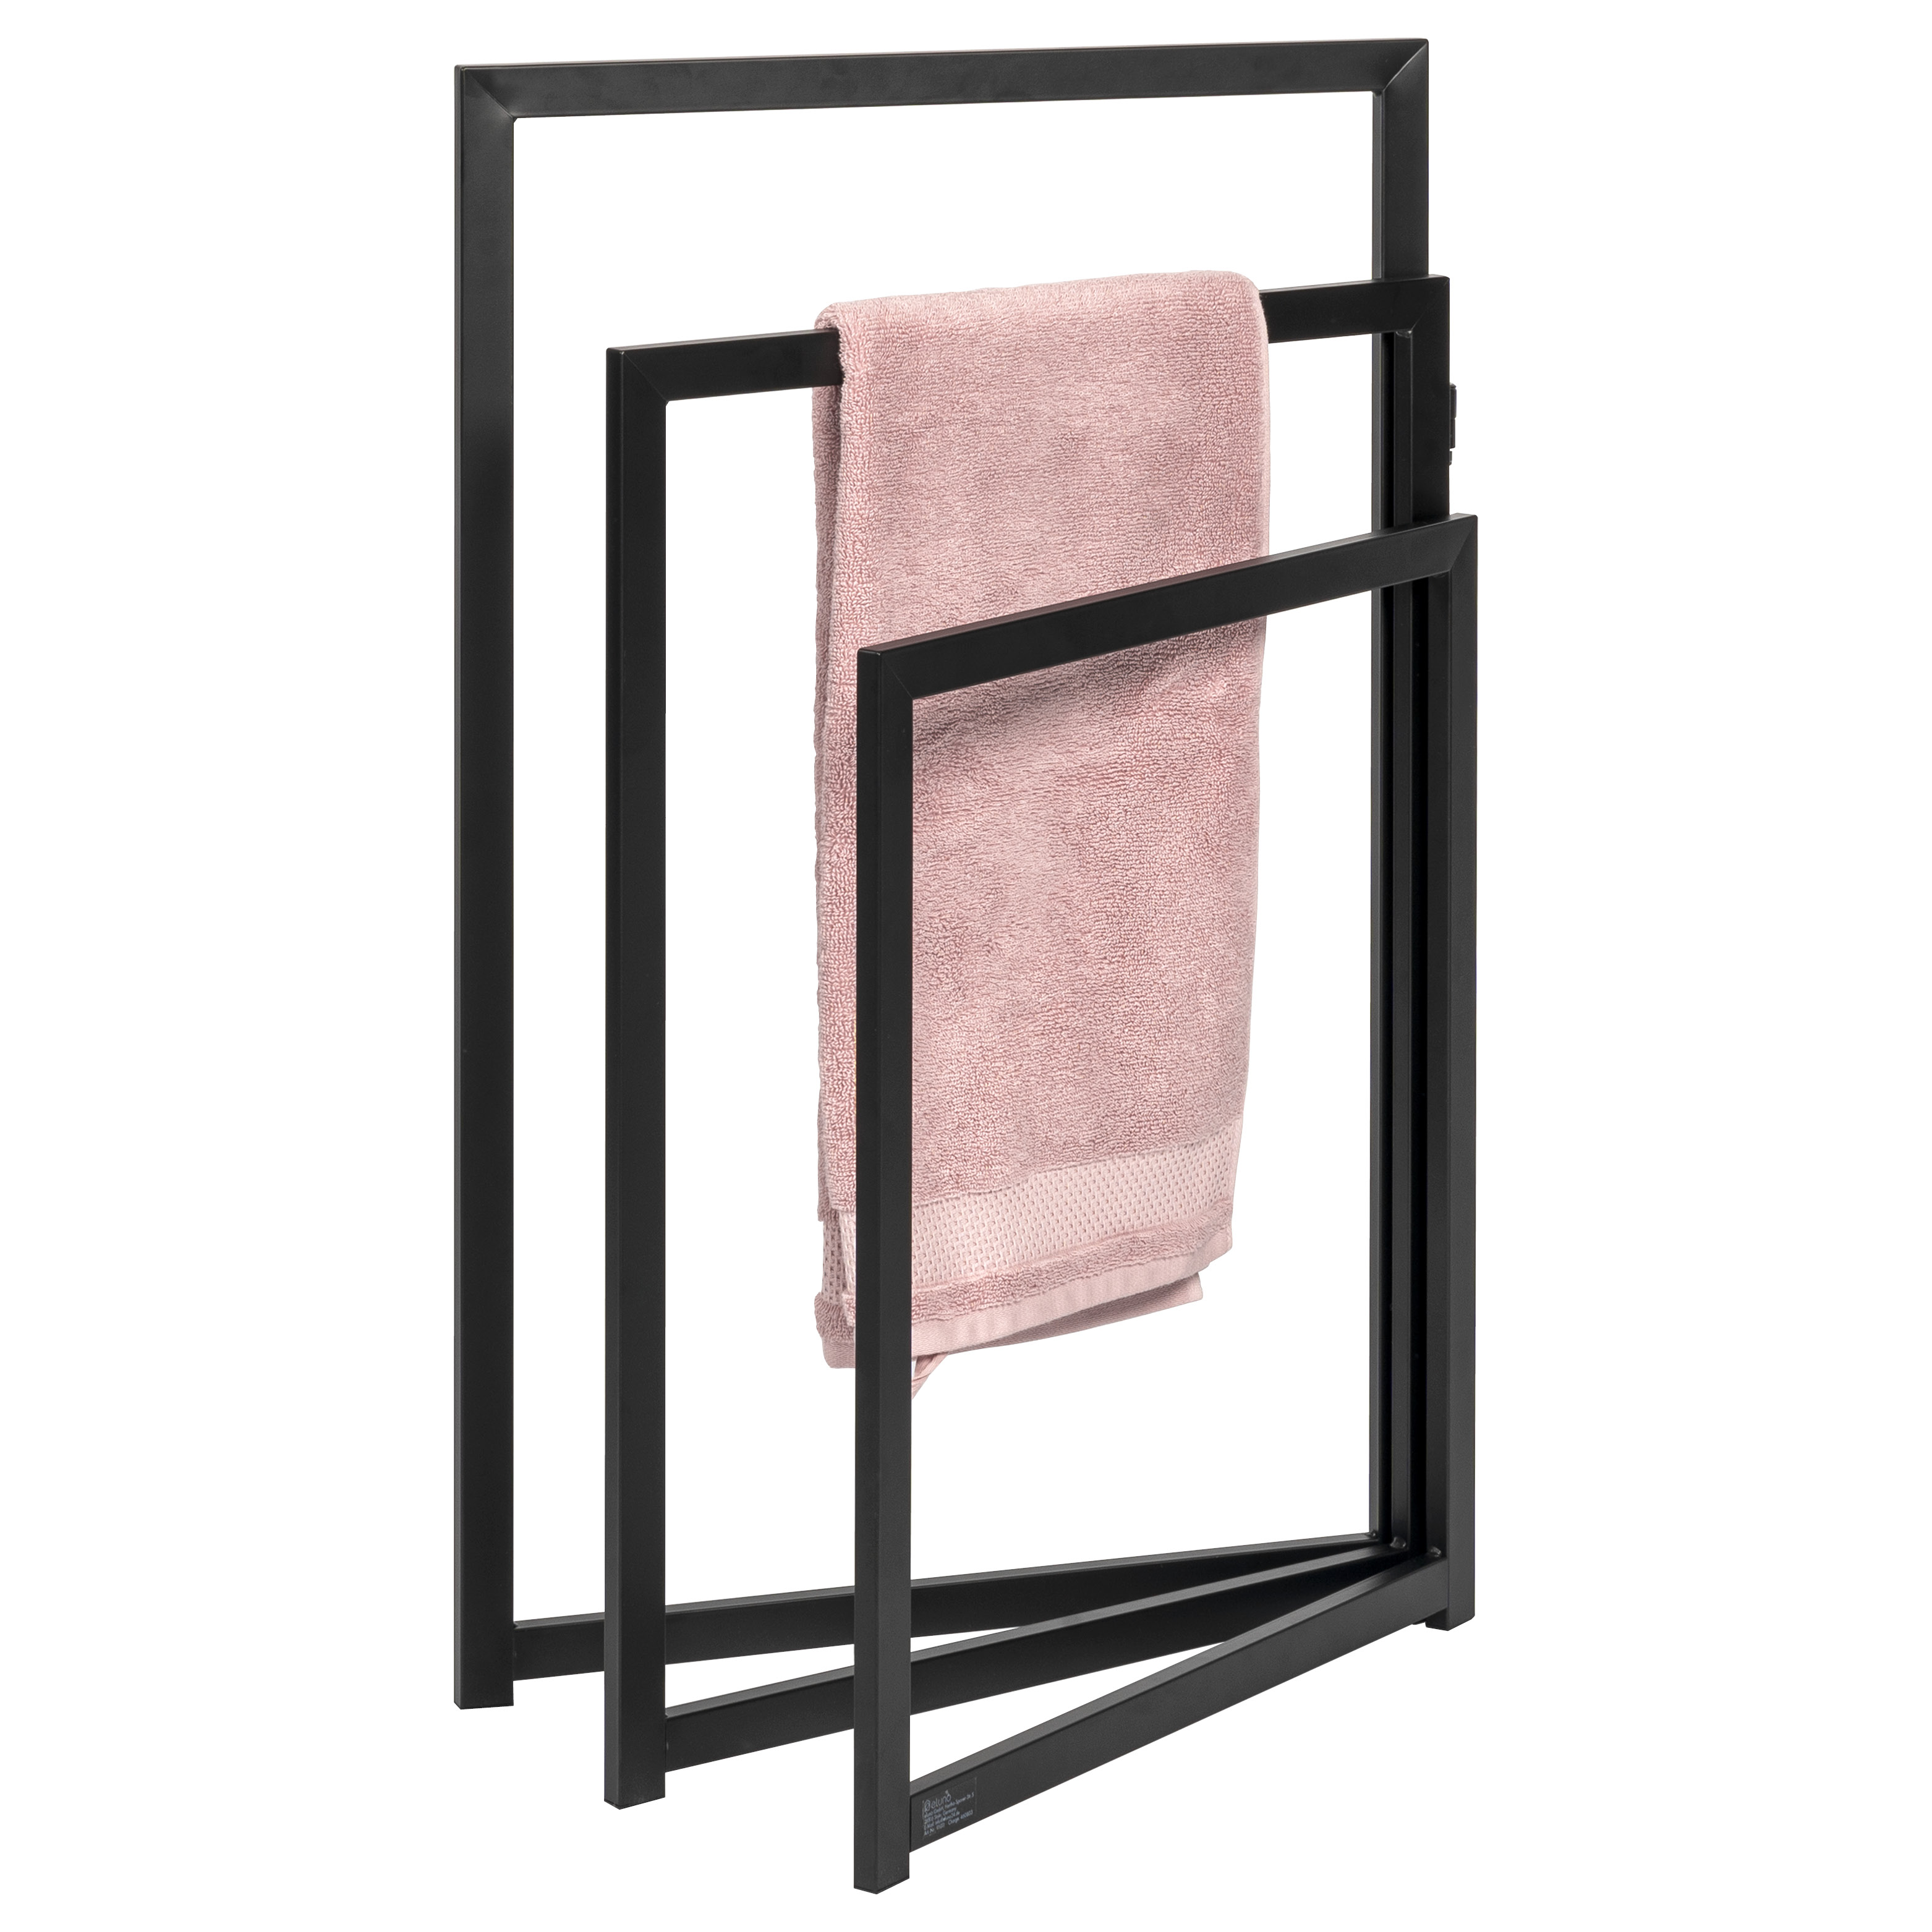 Stand-Handtuchhalter aus mattschwarzem Metall, freistehender moderner Handtuchständer